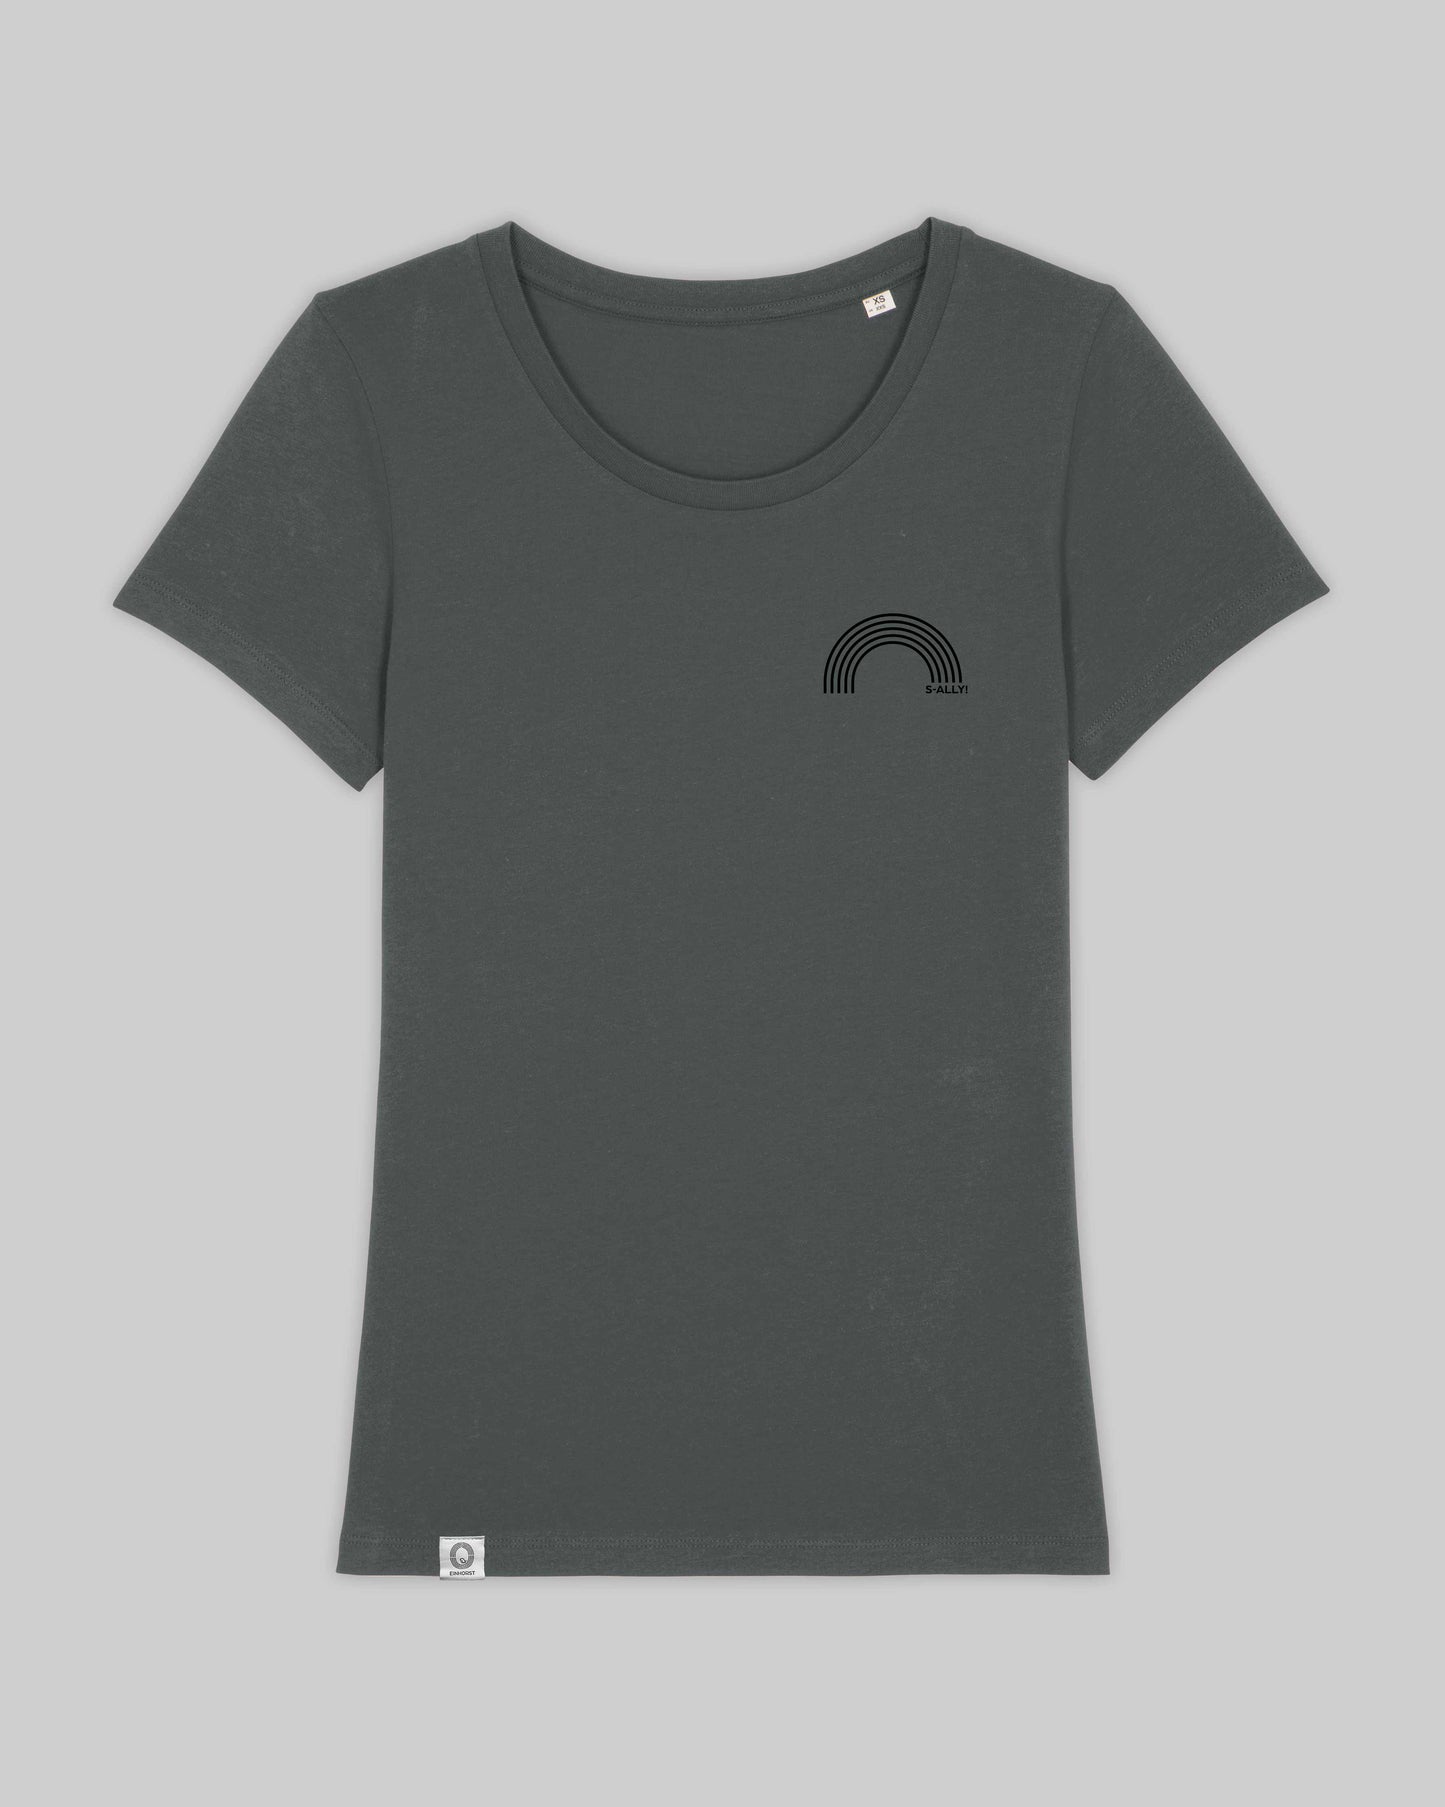 EINHORST® Organic Shirt tailliert in "Anthracite" mit dem Motiv "s-ally Regenbogen" in der Kombination schwarzer Regenbogen mit schwarzer Schrift, Bild von Shirt von vorne